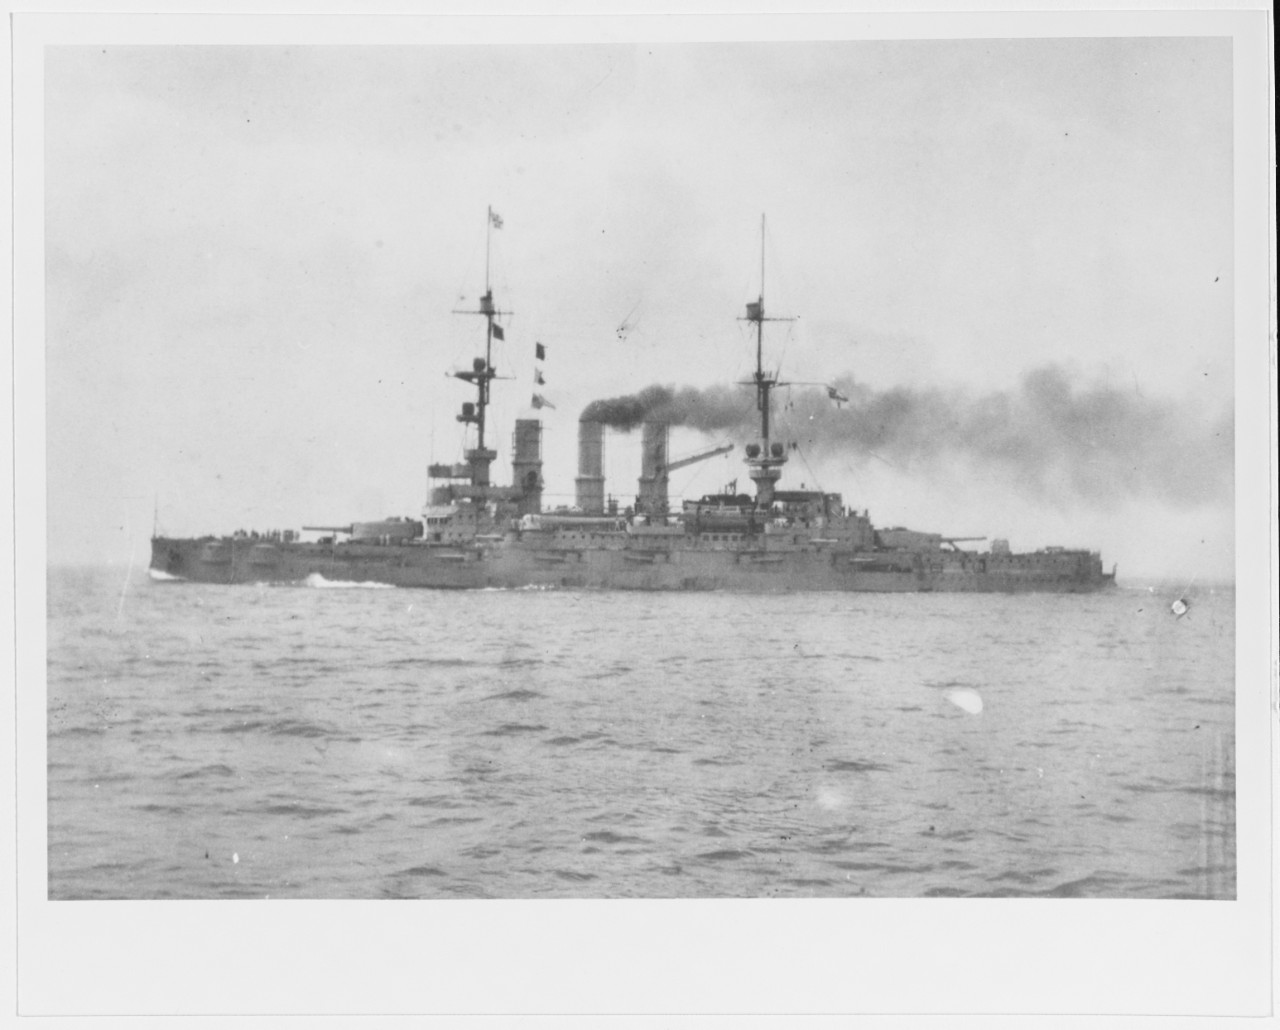 German Deutschland-class battleship in 1915-1916